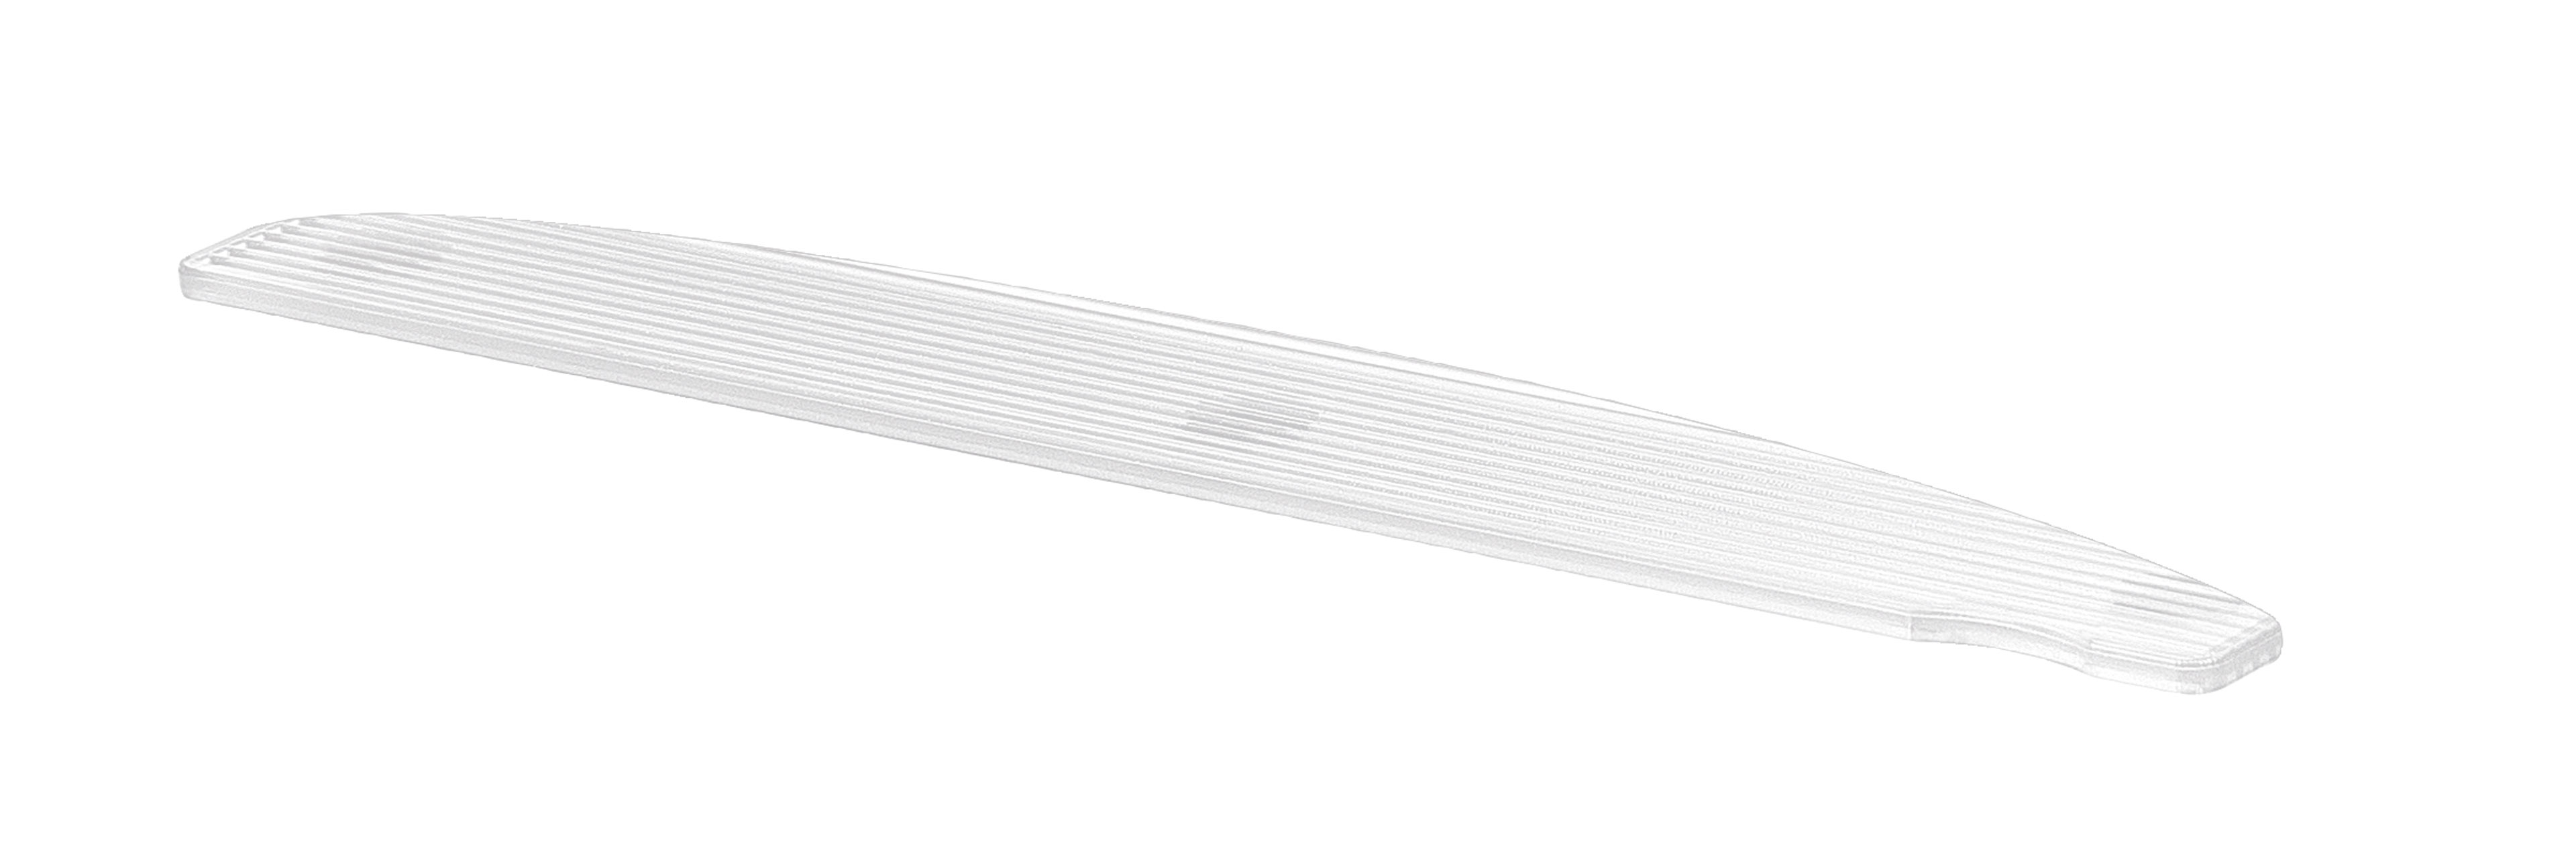 BAEHR Kunststoff-Bowfeile, weiß ohne Feilblätter, 10 Stück